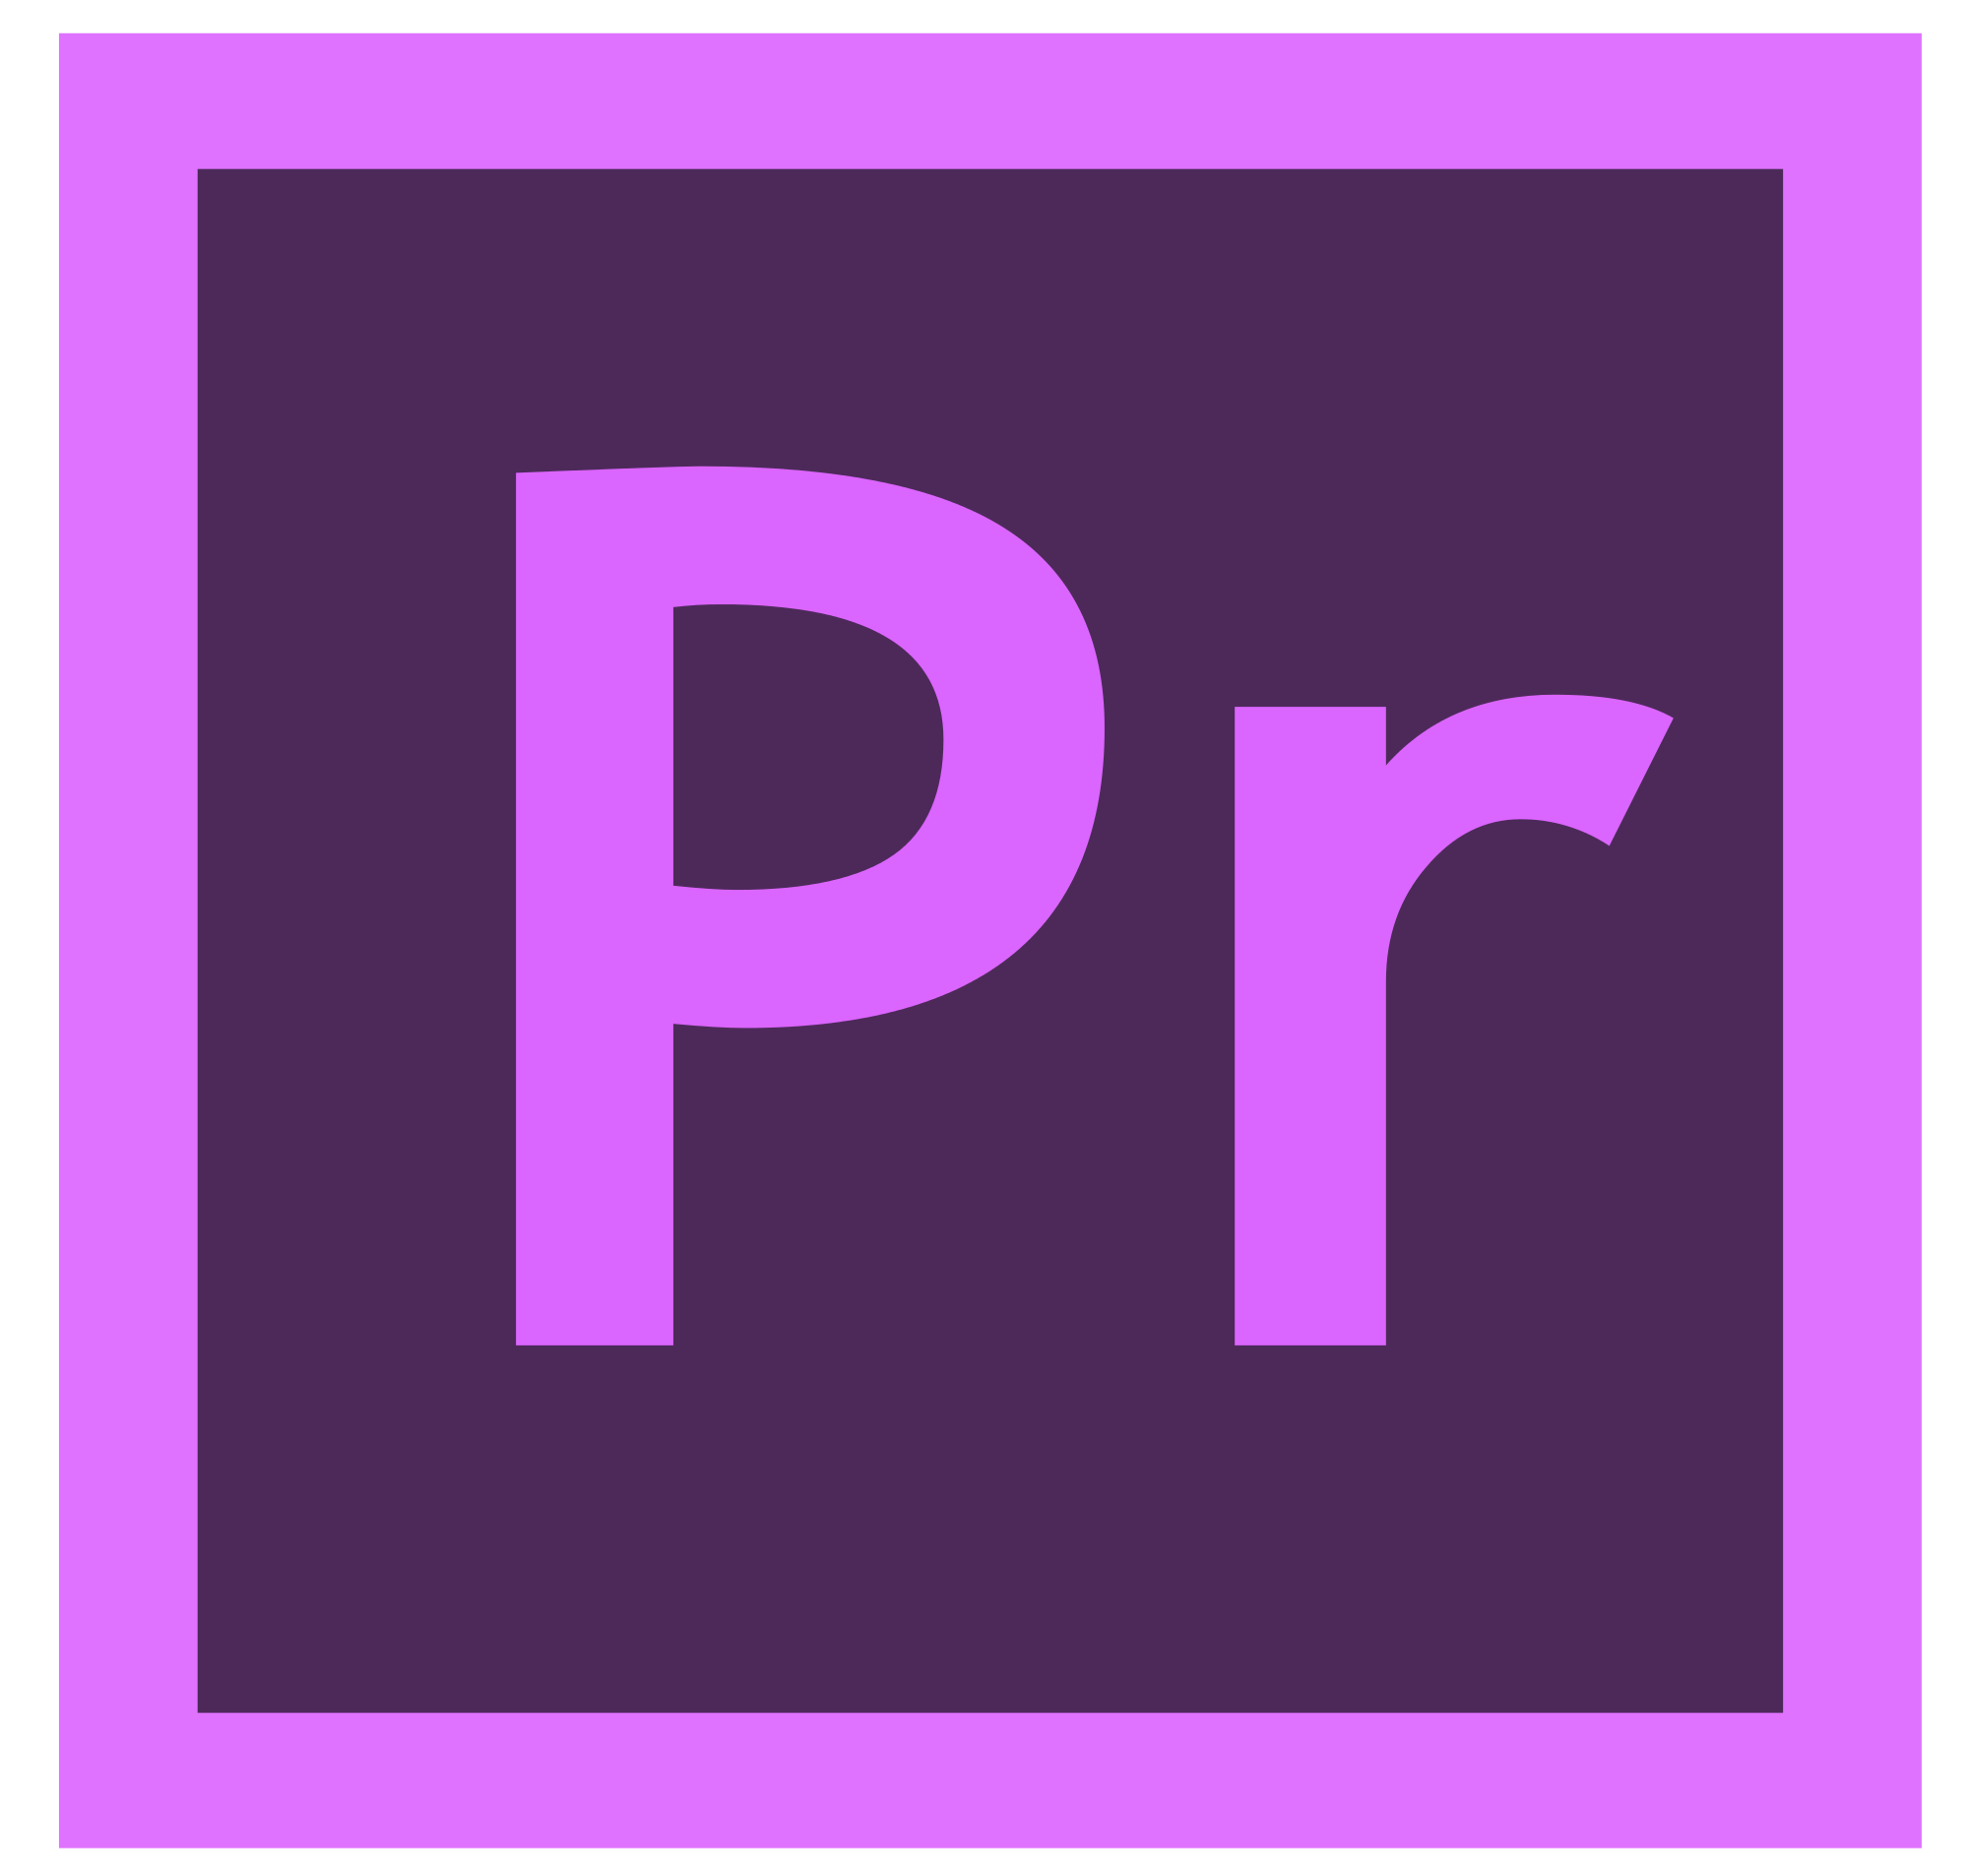 Adobe Premiere Logo